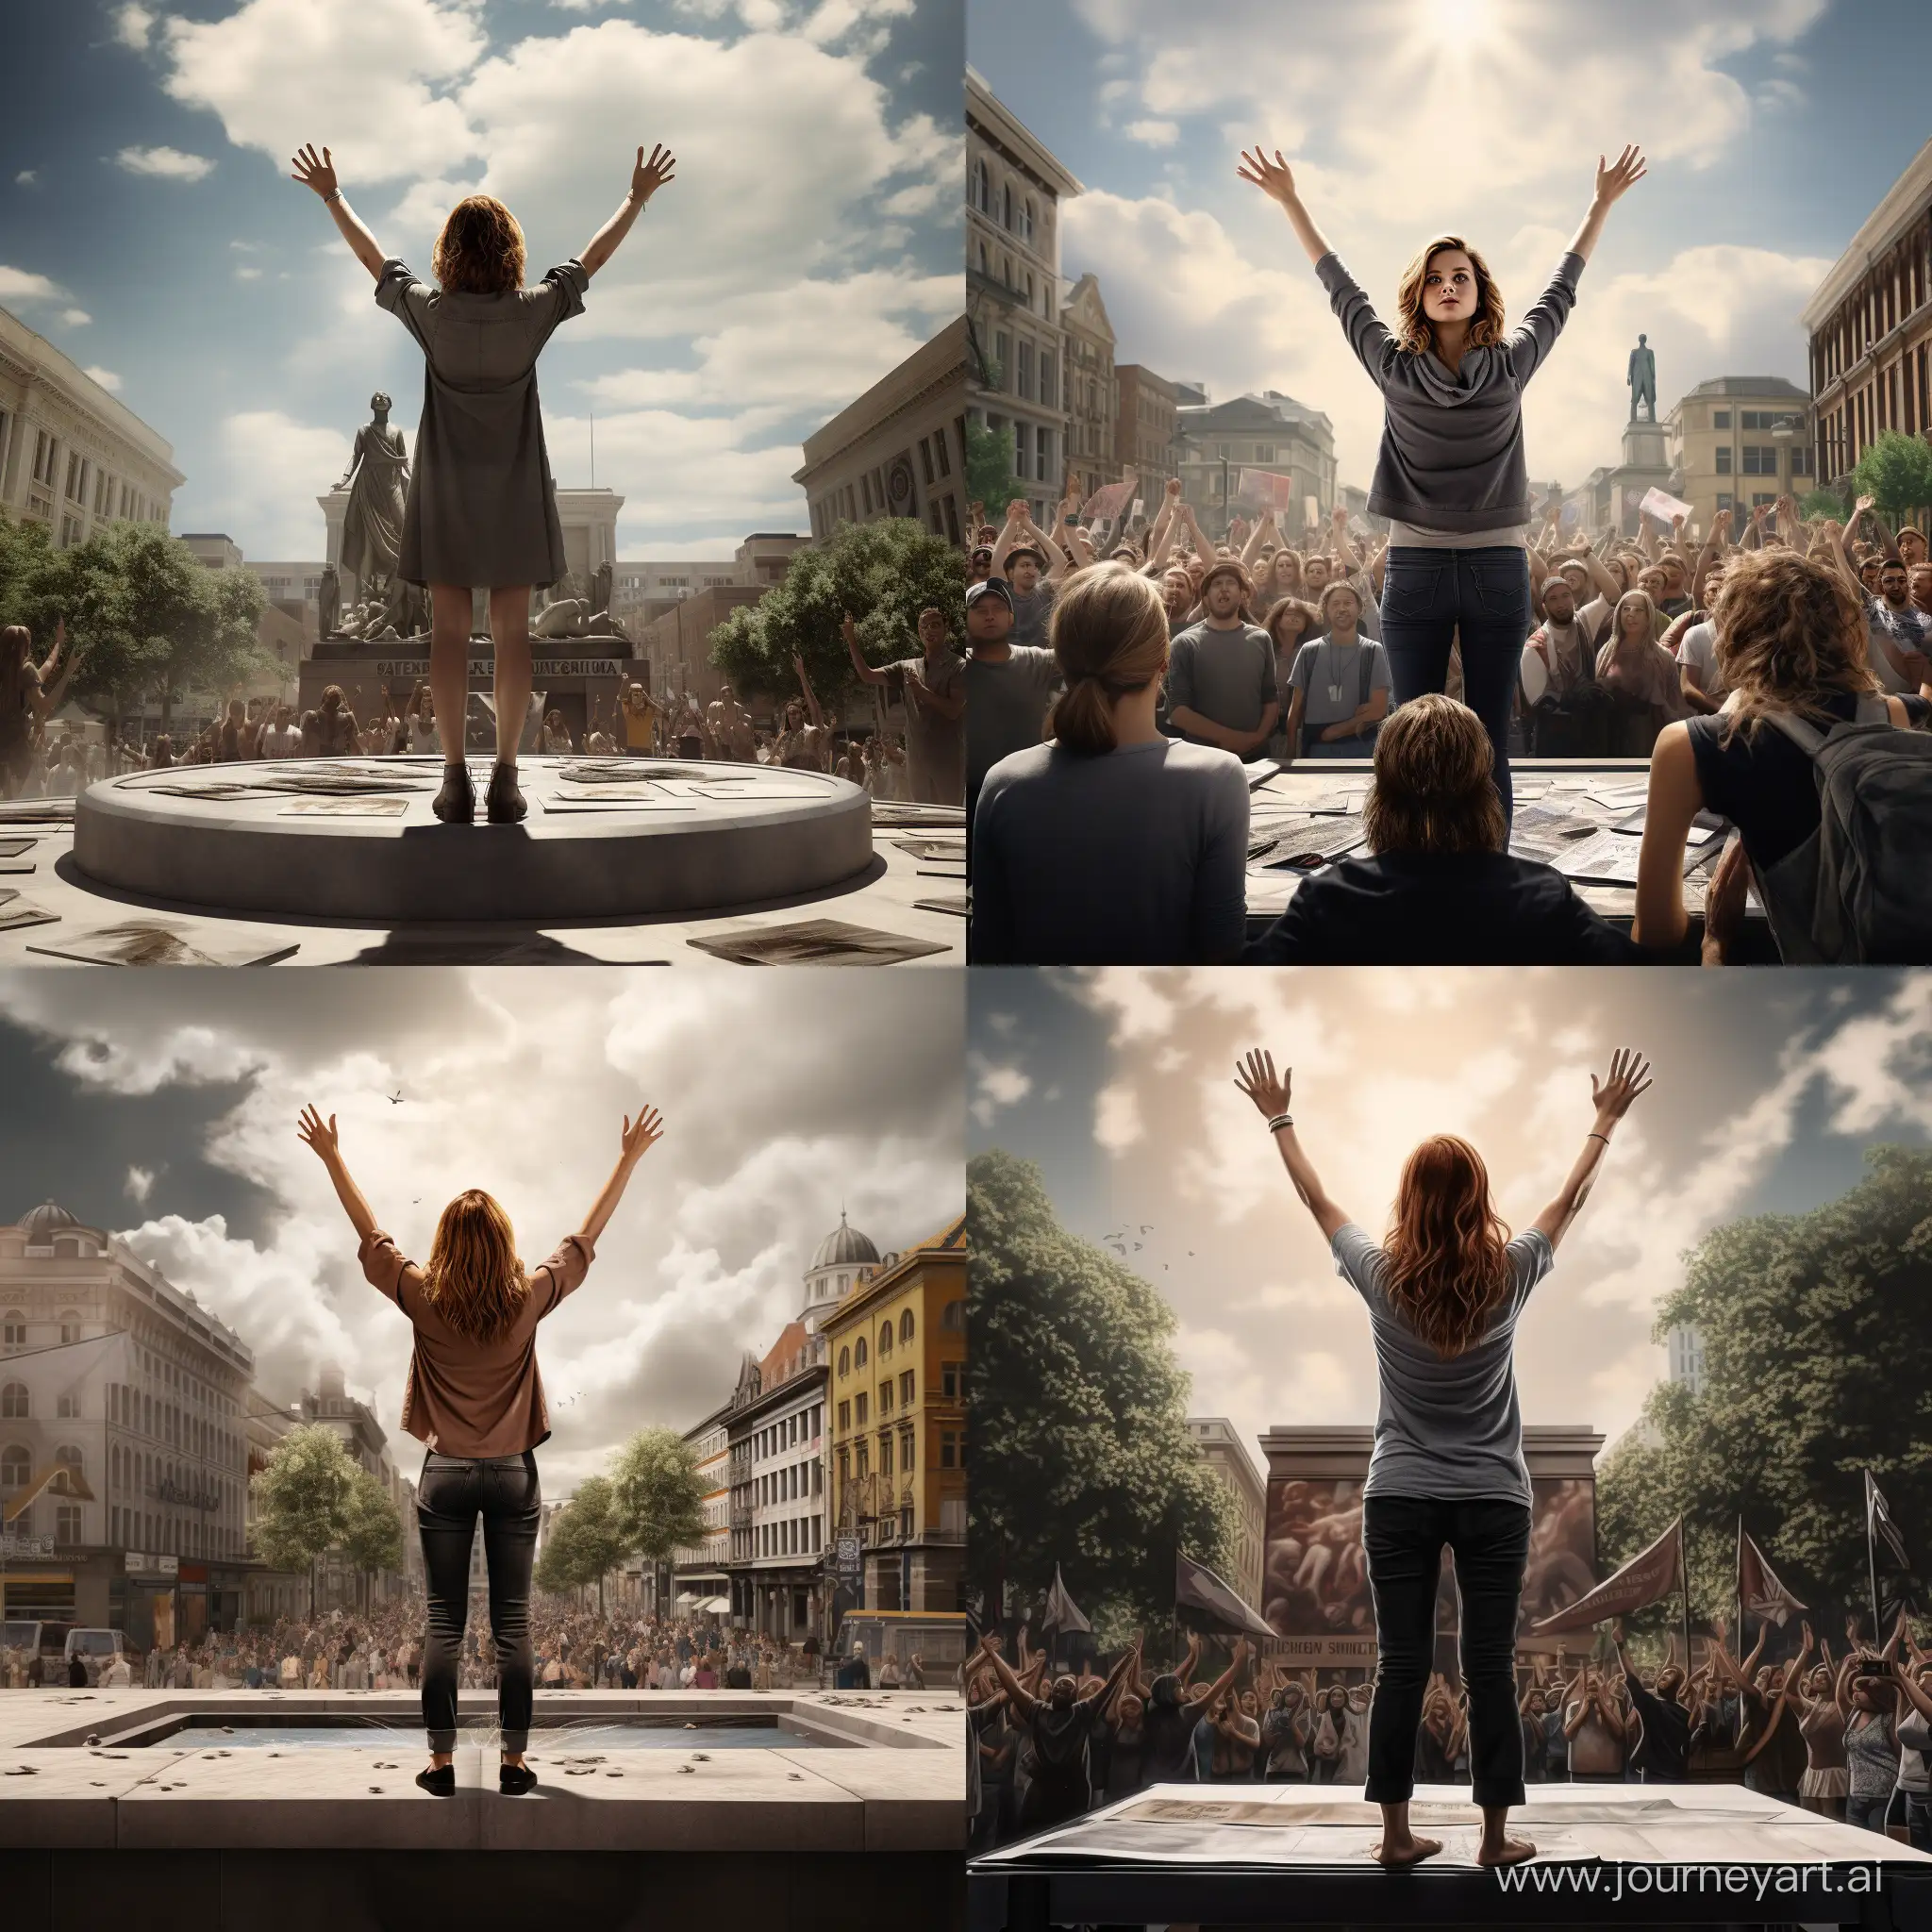 Девушка на площади, стоя в центре площади на постаменте,поднимает руки и созывает людей на борьбу, фотография, гиперреализм, высокое разрешение